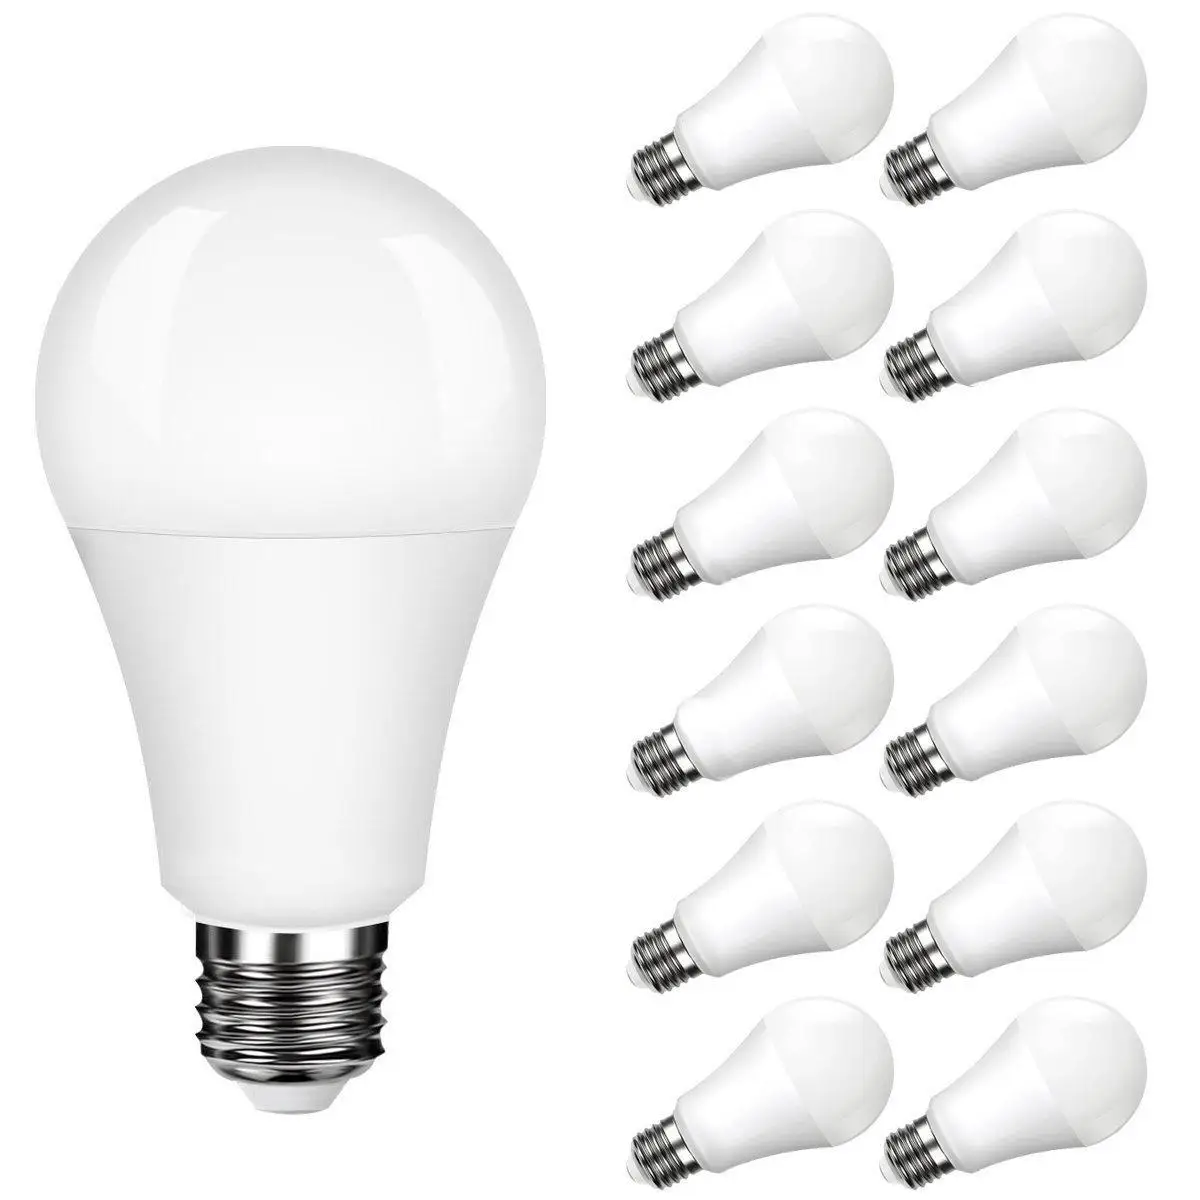 SOL светодиодный 12 упакованный A19 E26 E27 Базовый светодиодный светильник, лампа с регулируемой яркостью, Дневной светильник, белый, 5000 К, 100 Вт, эквивалент 11 Вт, CRI 80